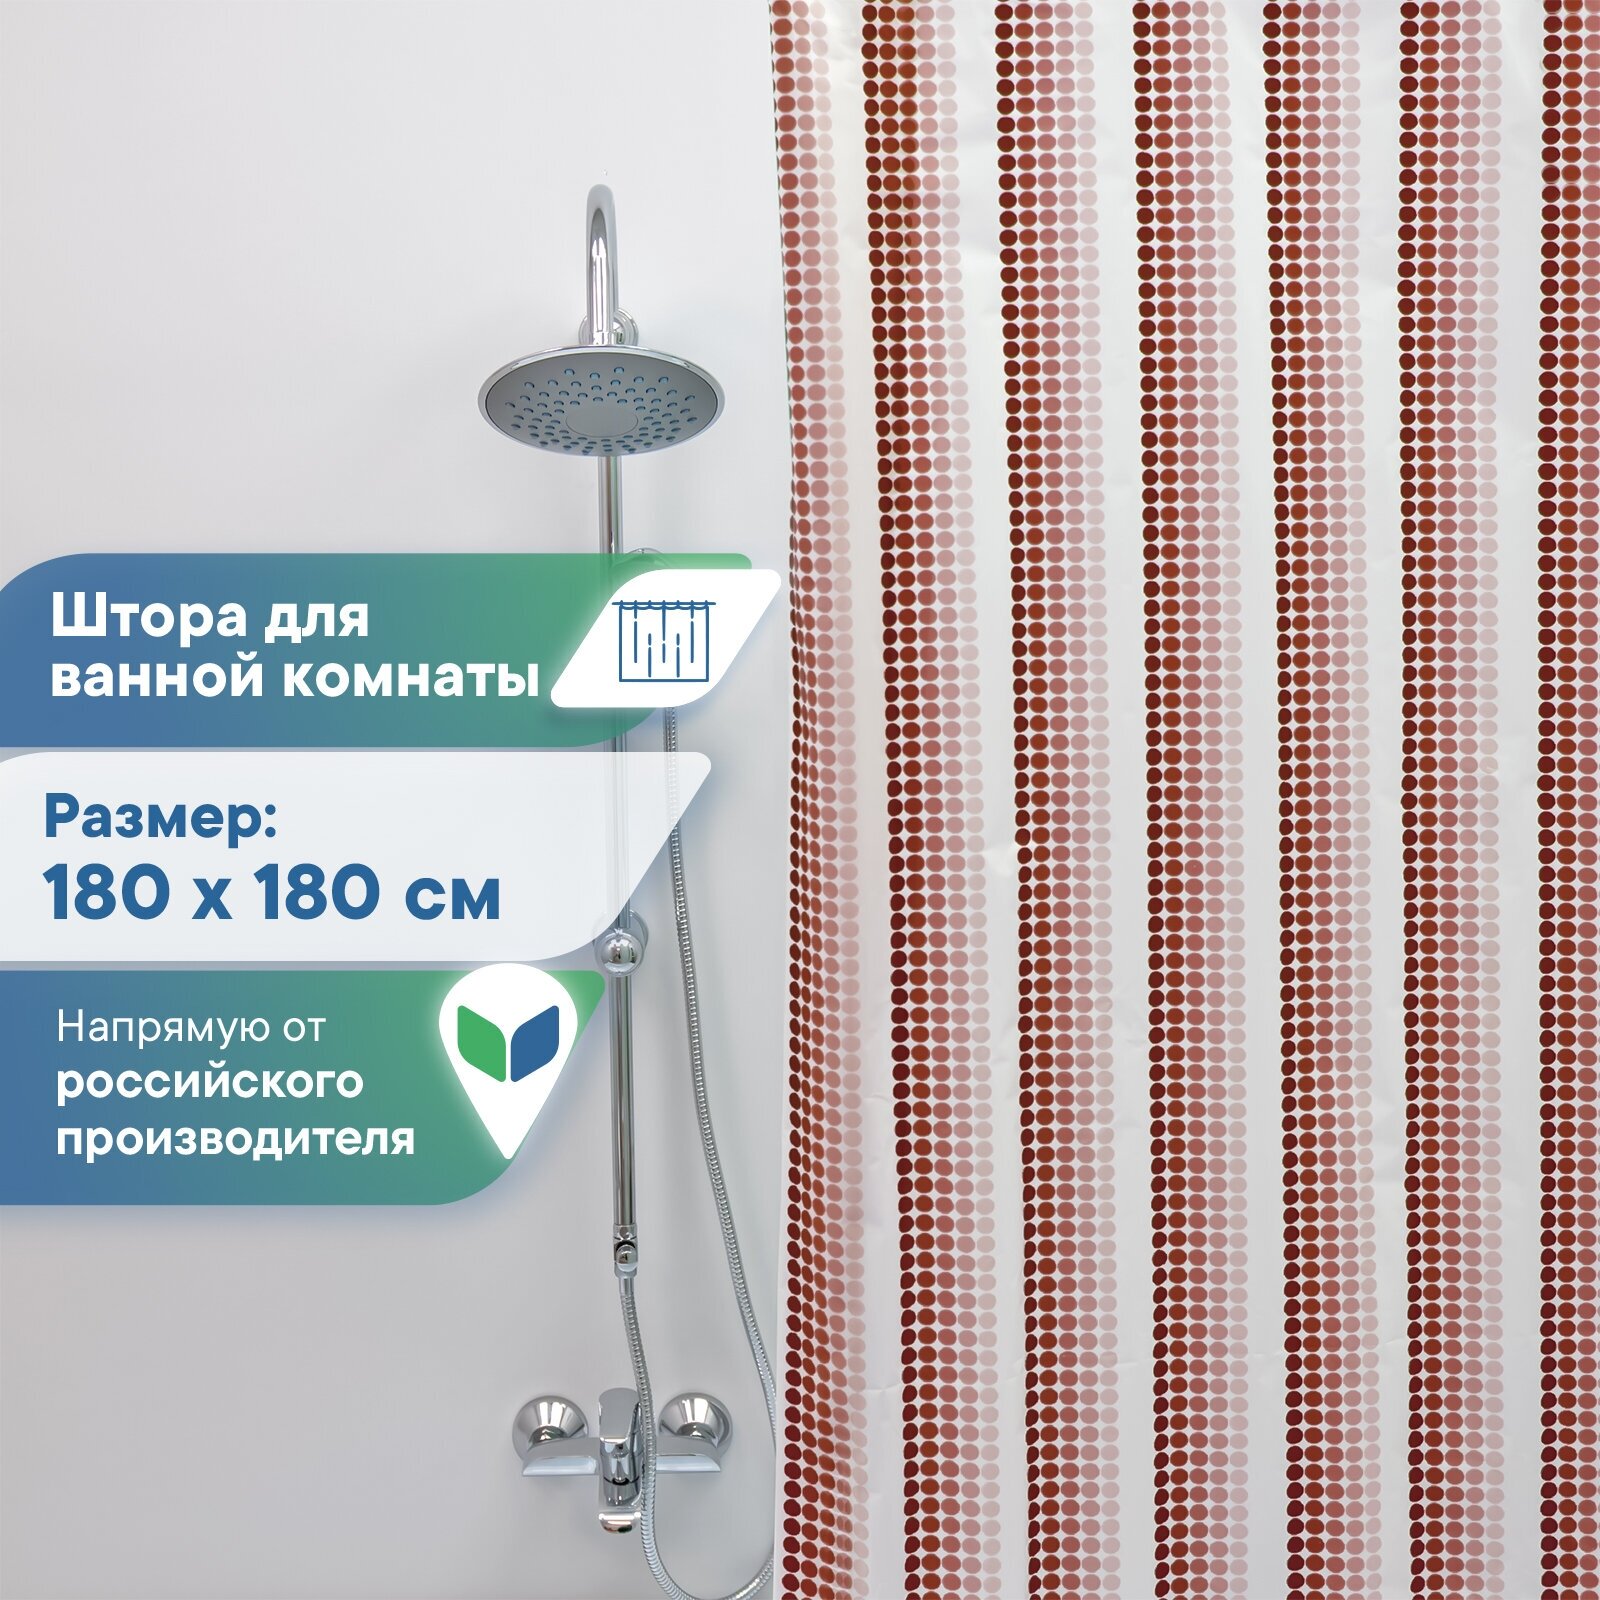 Штора для ванной комнаты VILINA водонепроницаемая полиэтиленовая 180х180 см Ритм бордовая